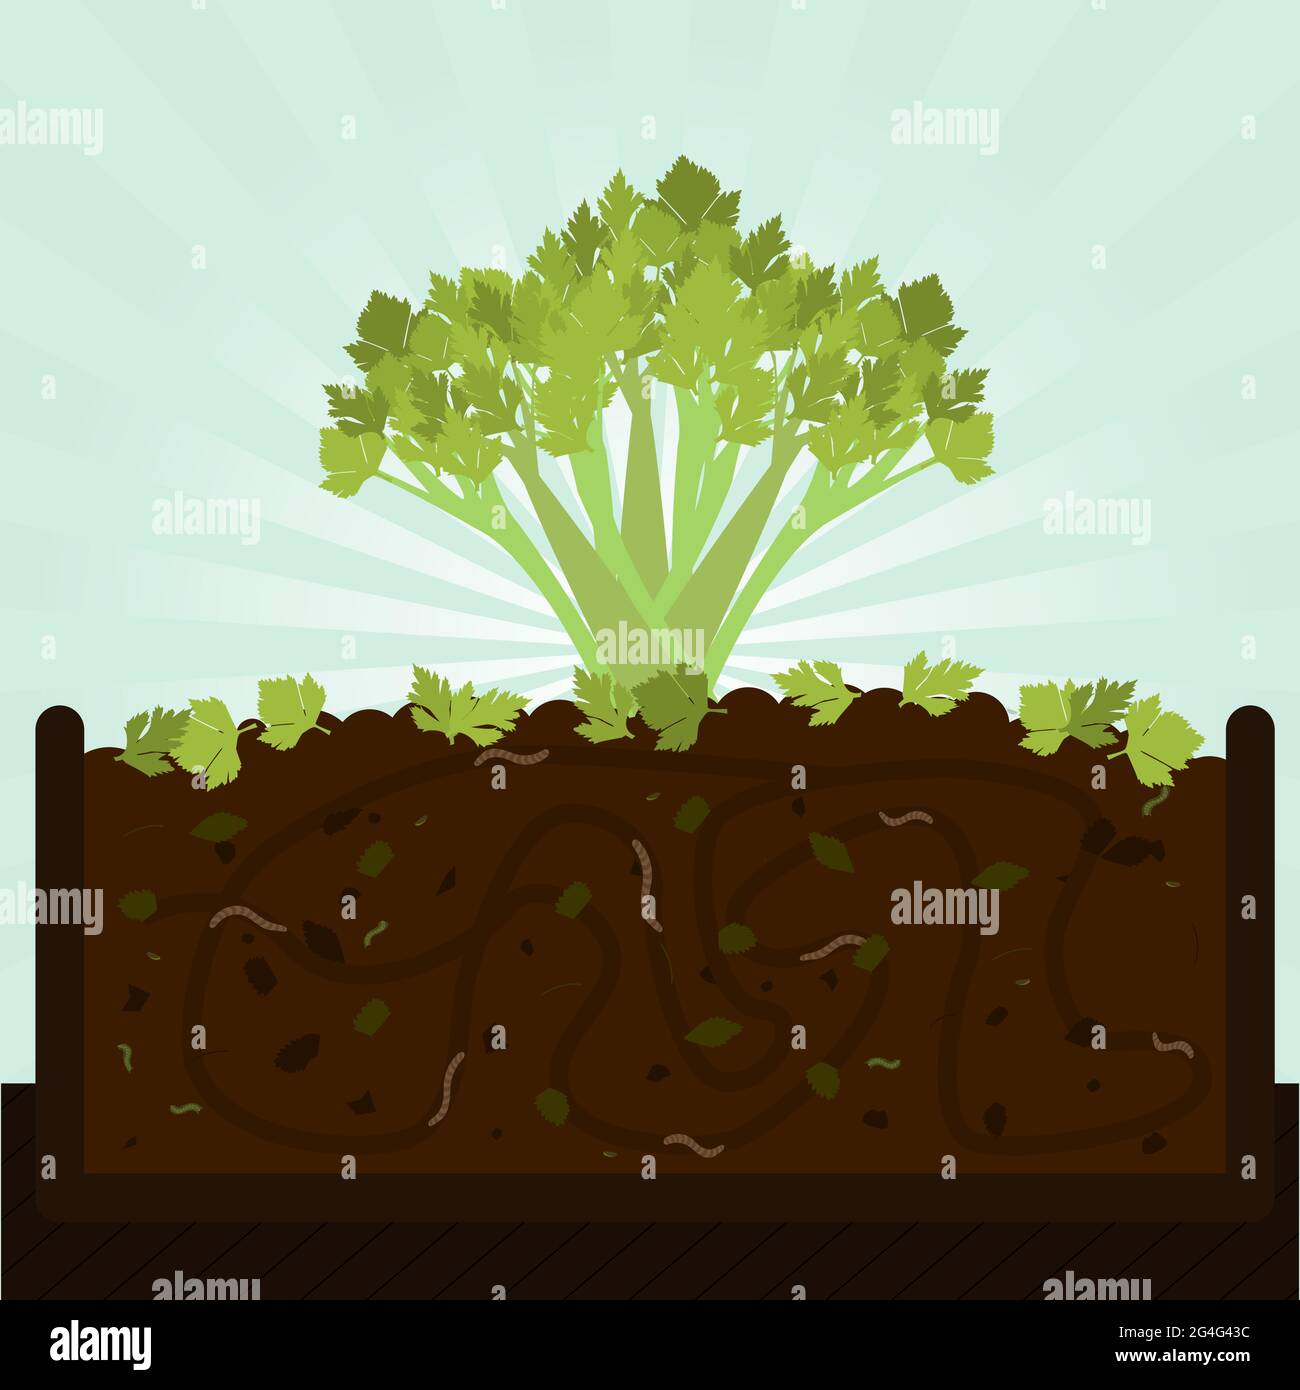 Stängel Sellerie. Kompostierungsprozess mit organischen Substanz, Mikroorganismen und Regenwürmern. Abgefallene Blätter auf dem Boden. Stock Vektor